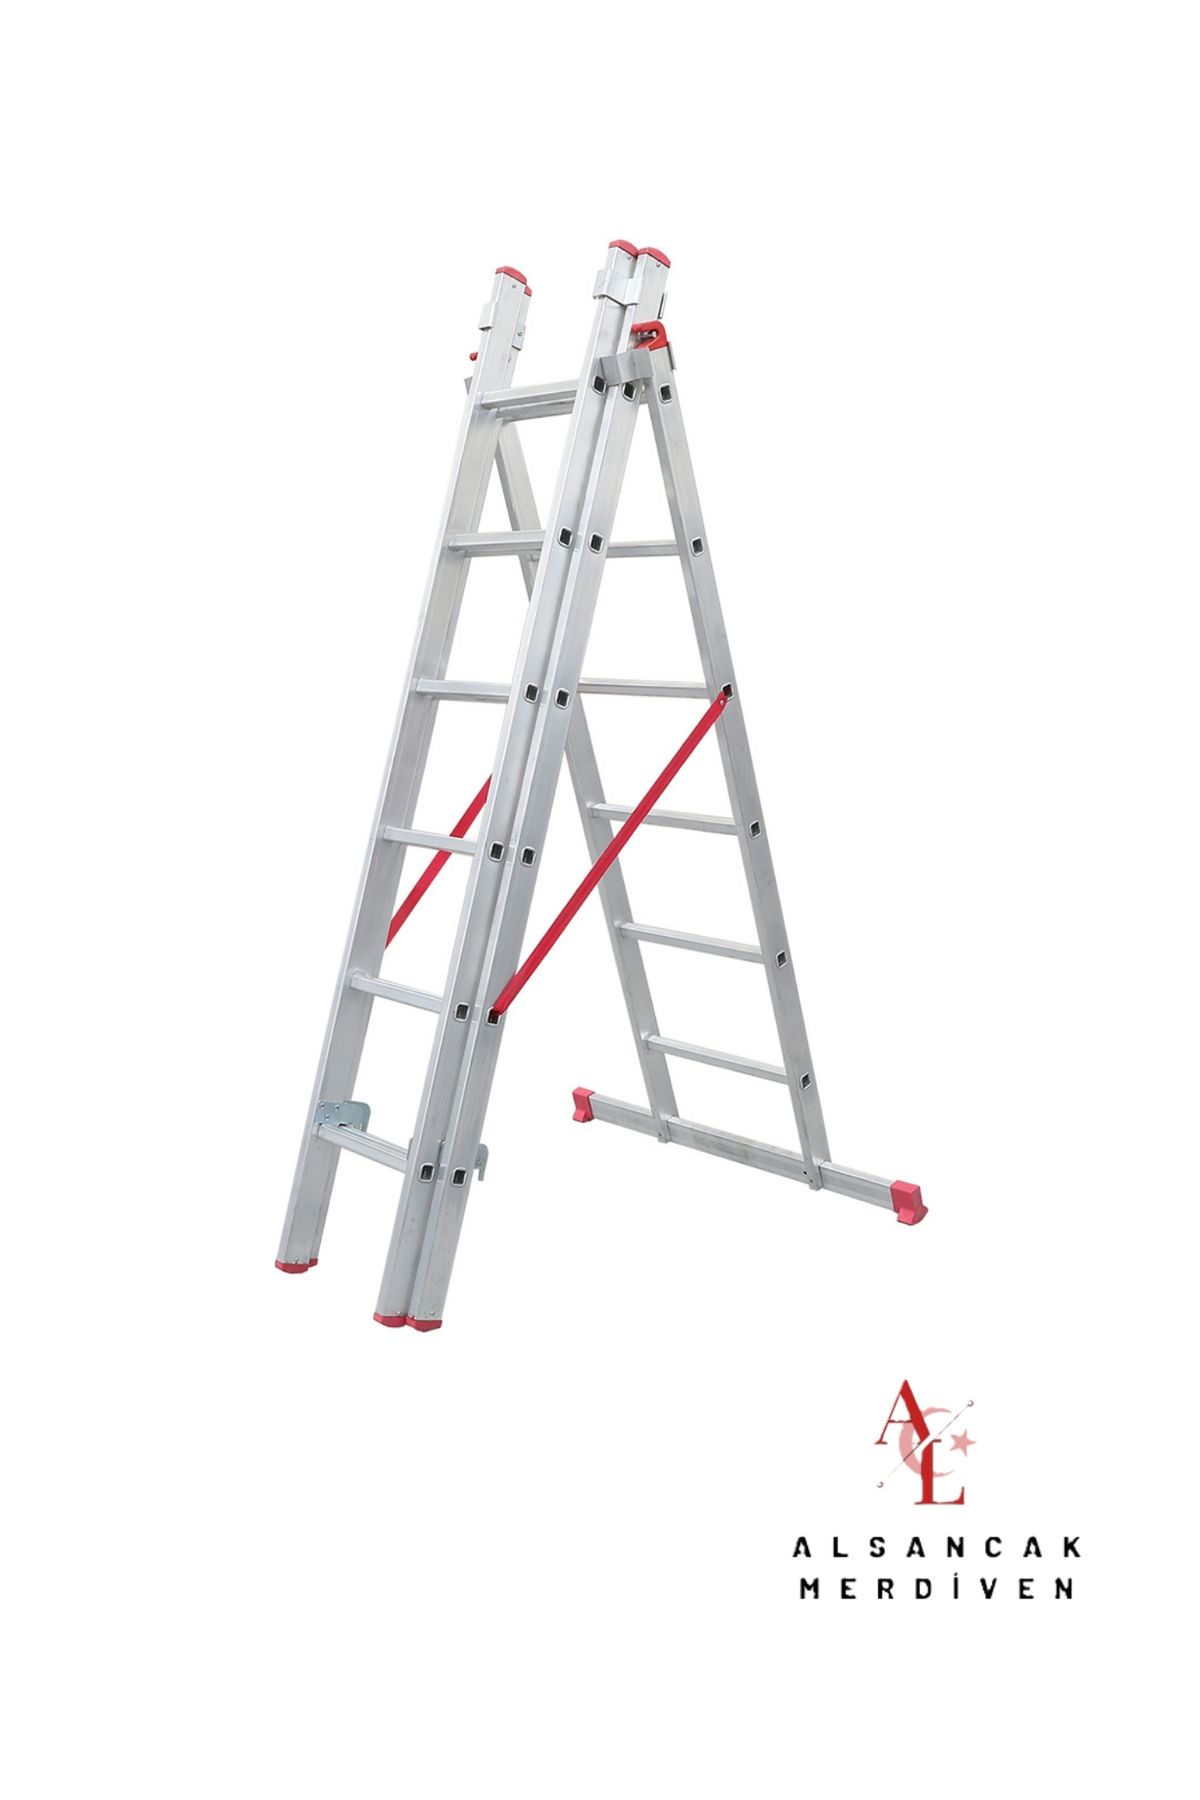 ALSANCAK MADENİ EŞYA 3X2M A tipi Endüstriyel Sürgülü Merdiven 3Parçalı Sürgülü A tipi merdiven ALS-A2X3 ALSANCAK MERDİVEN